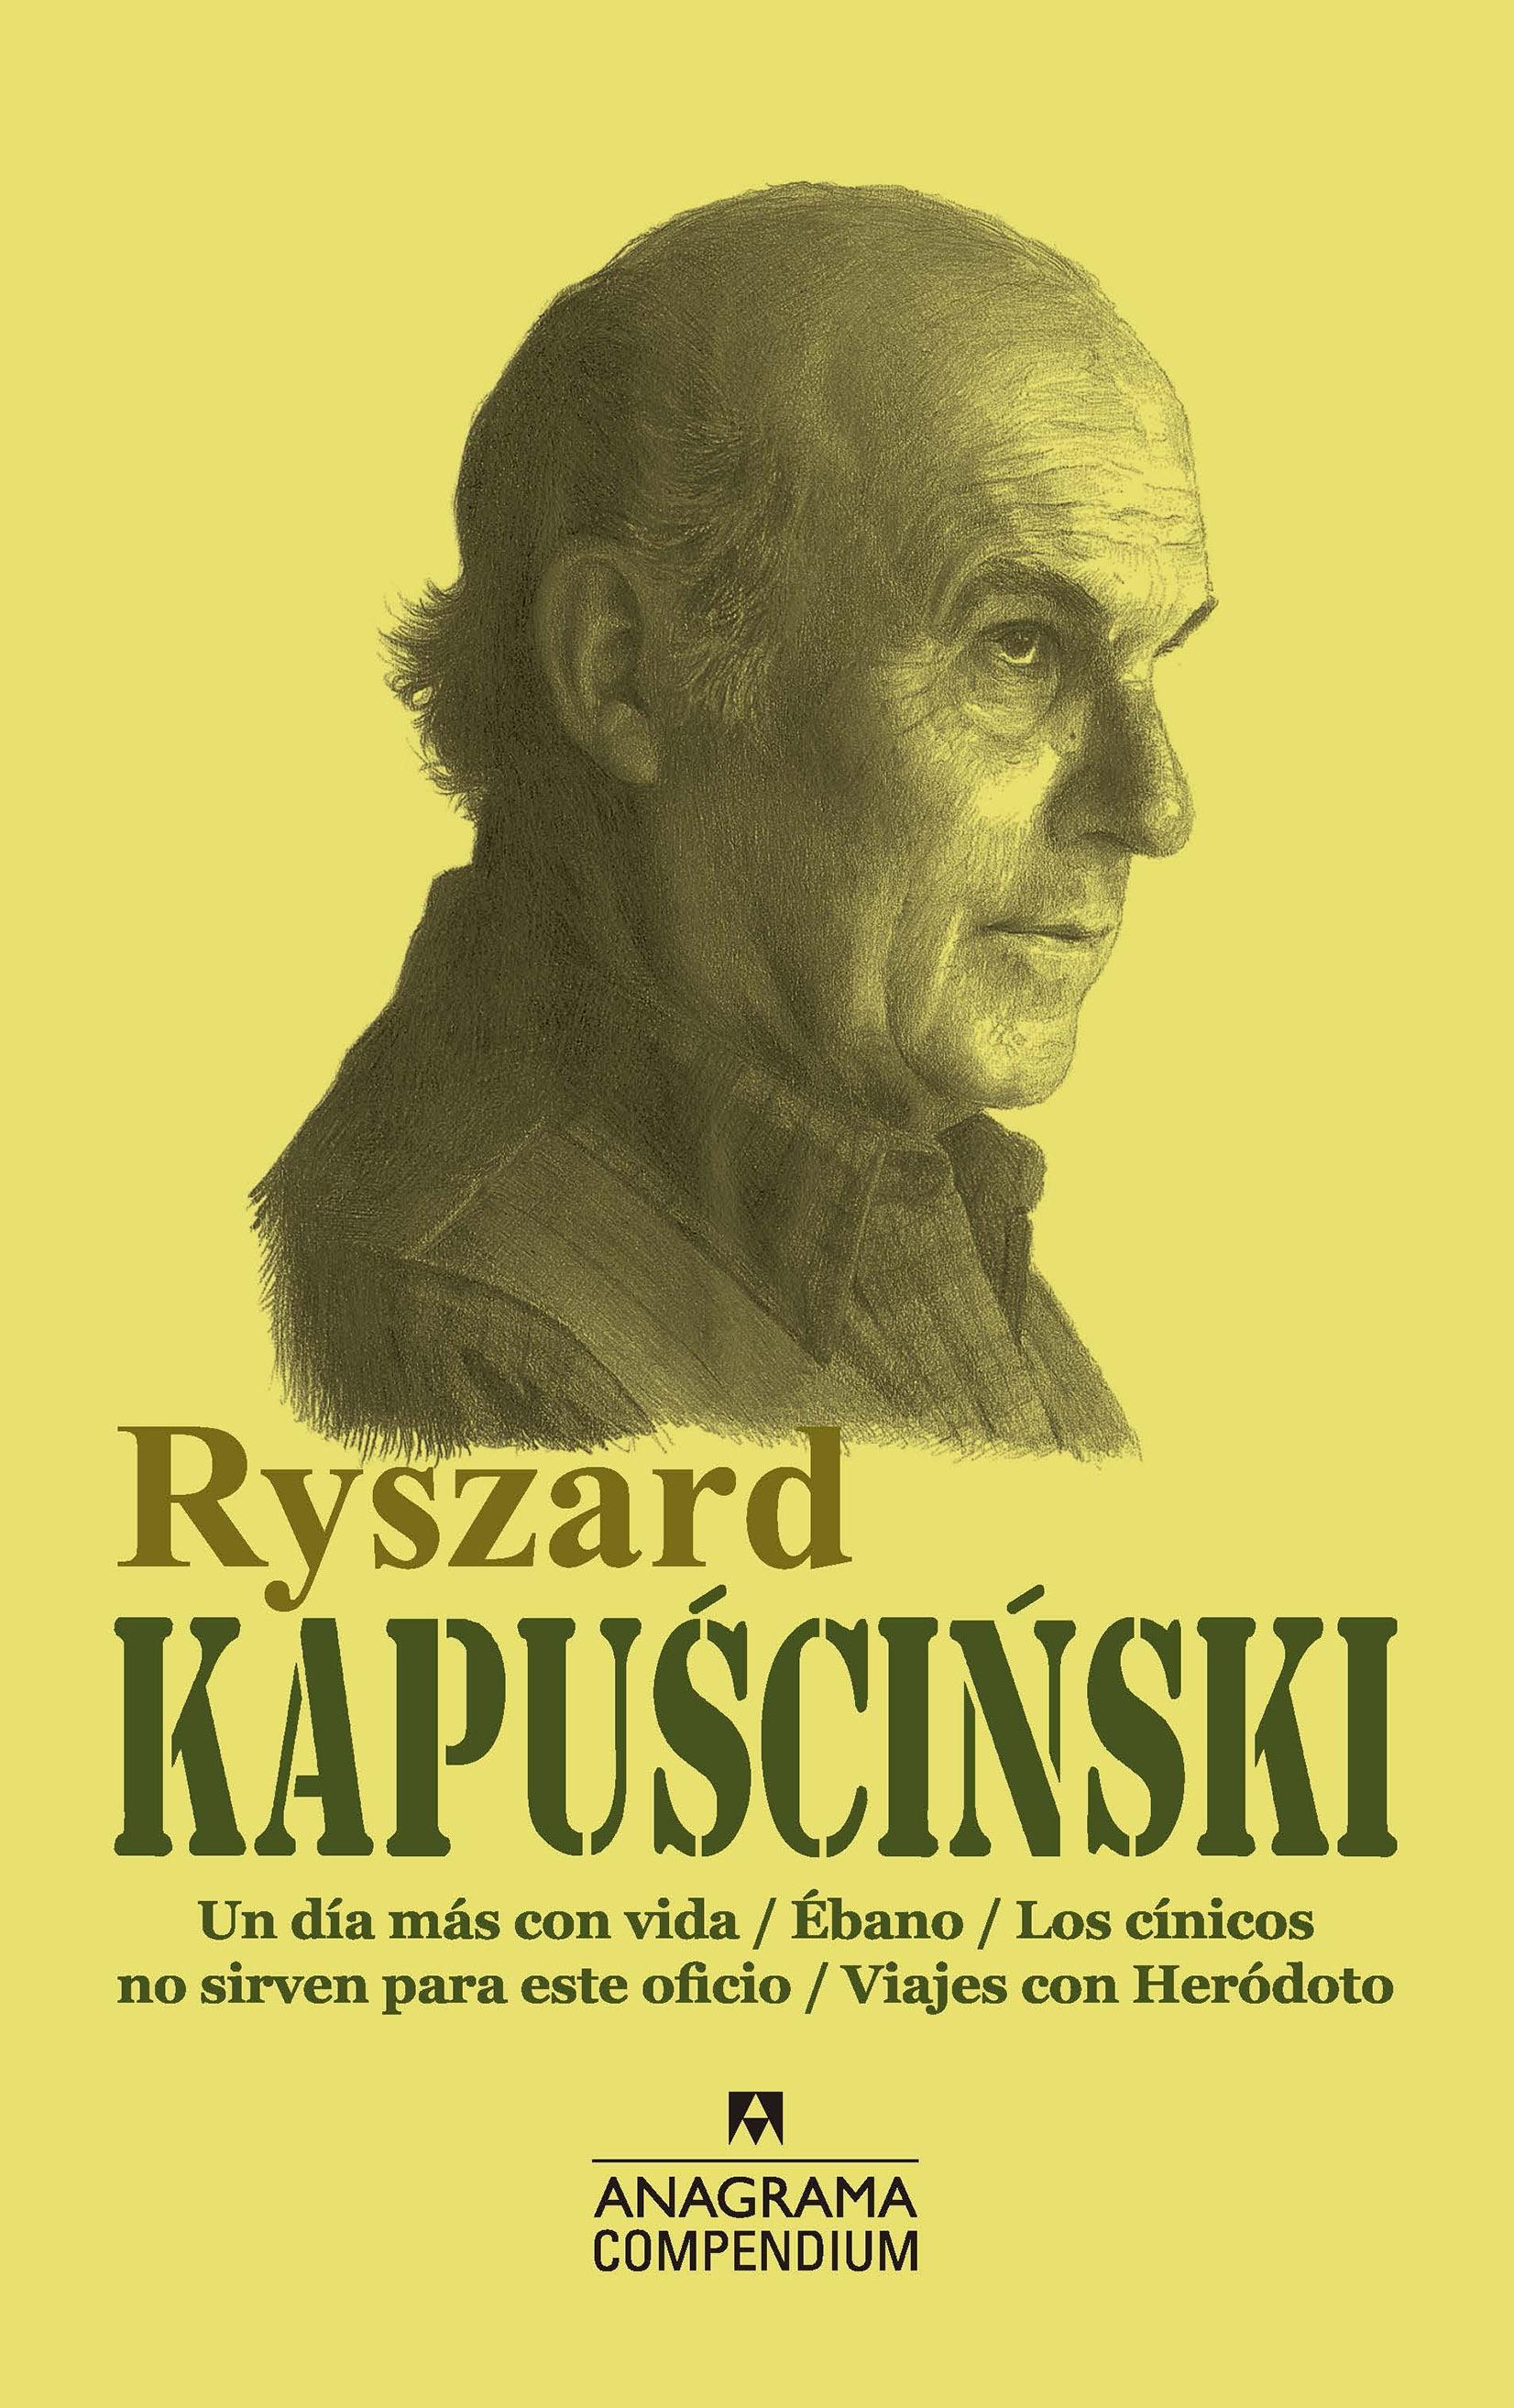 Ryszard Kapuscinski "Un Día Más con Vida / Ébano / los Cínicos no Sirven para Este Oficio / V"